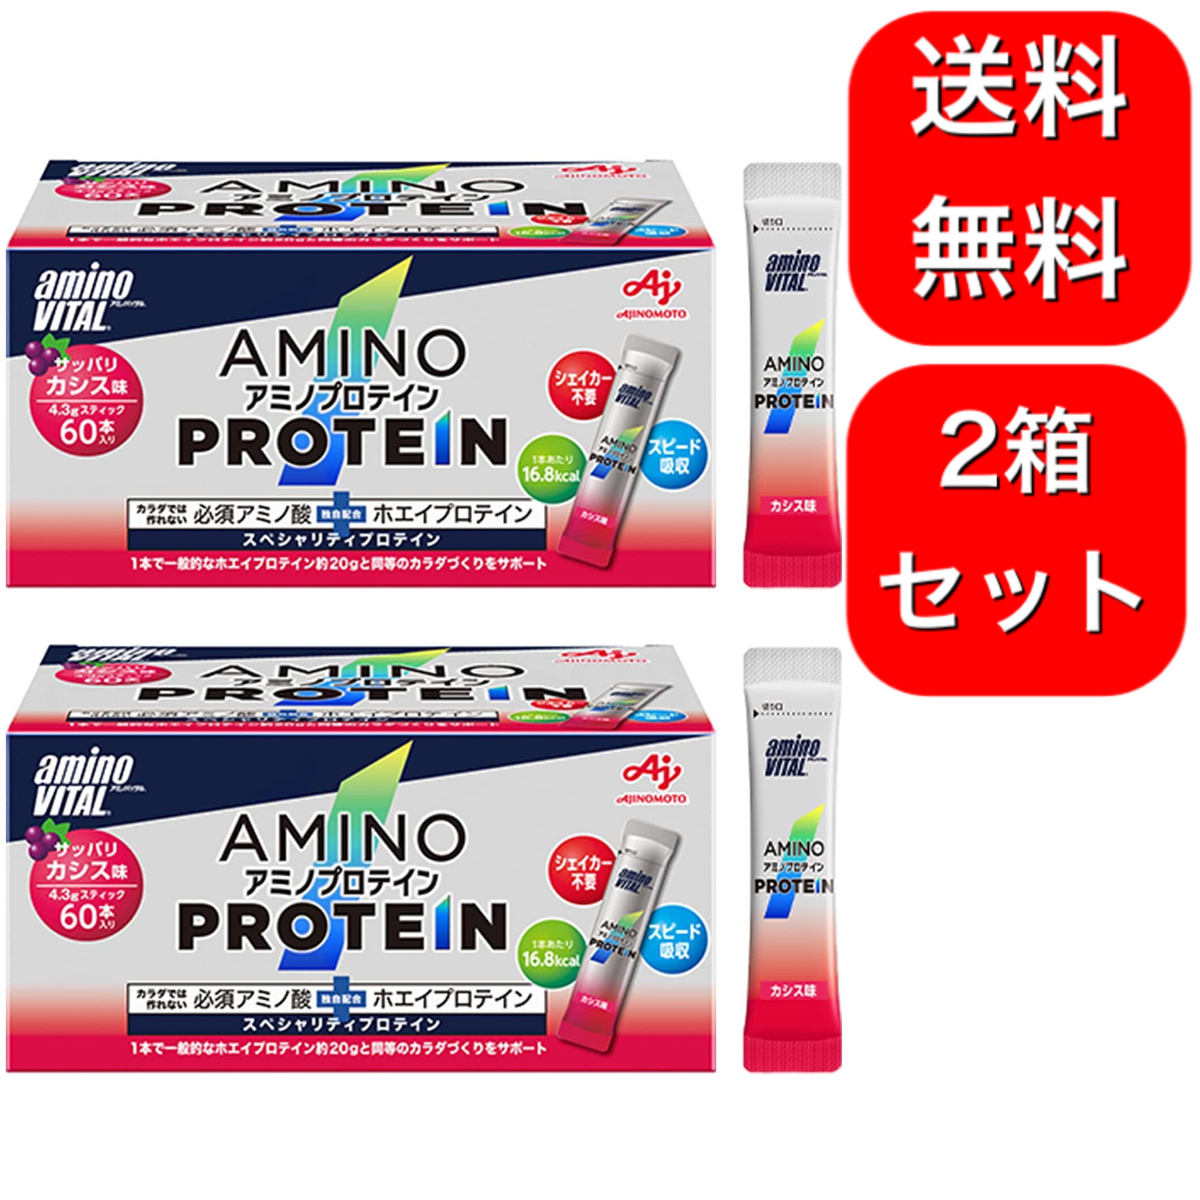 AJINOMOTO アミノバイタル アミノプロテイン カシス味 4.3g*60本